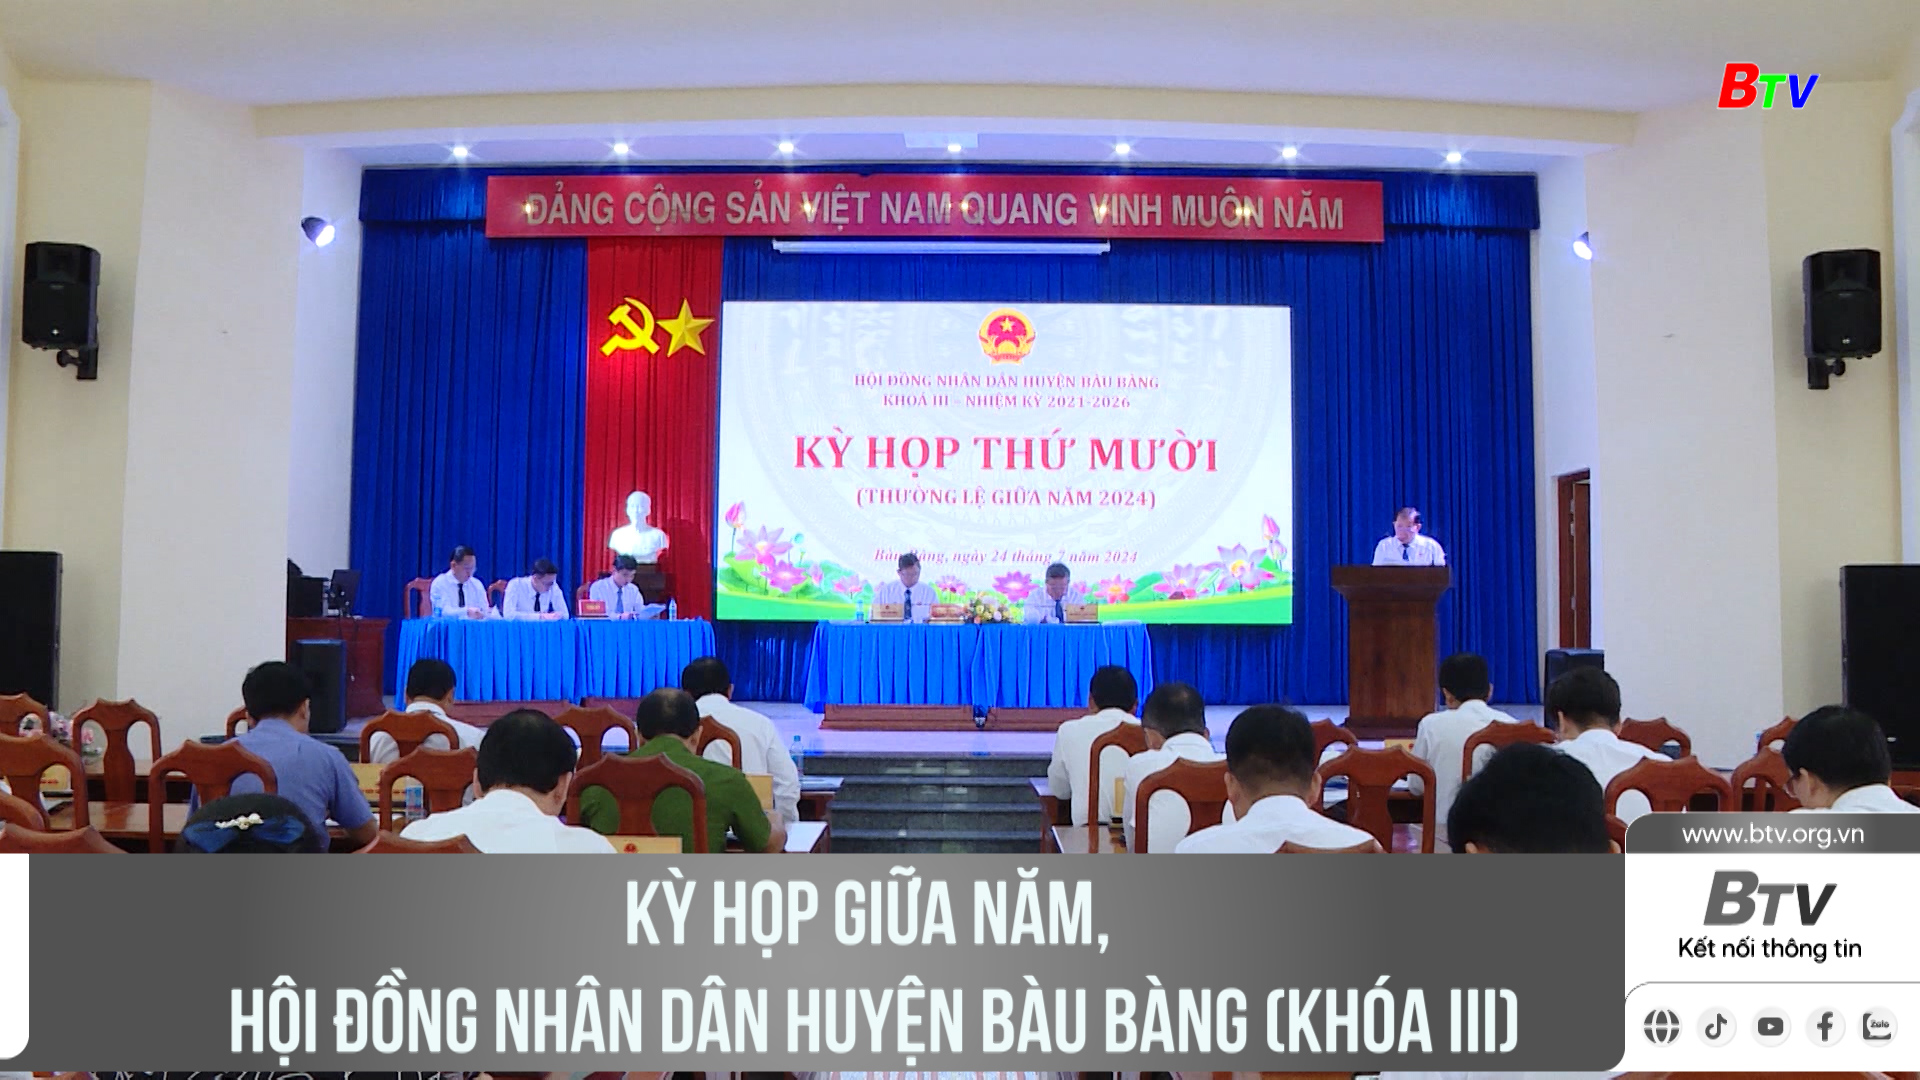 Kỳ họp giữa năm, Hội đồng nhân dân huyện Bàu Bàng (khóa III)